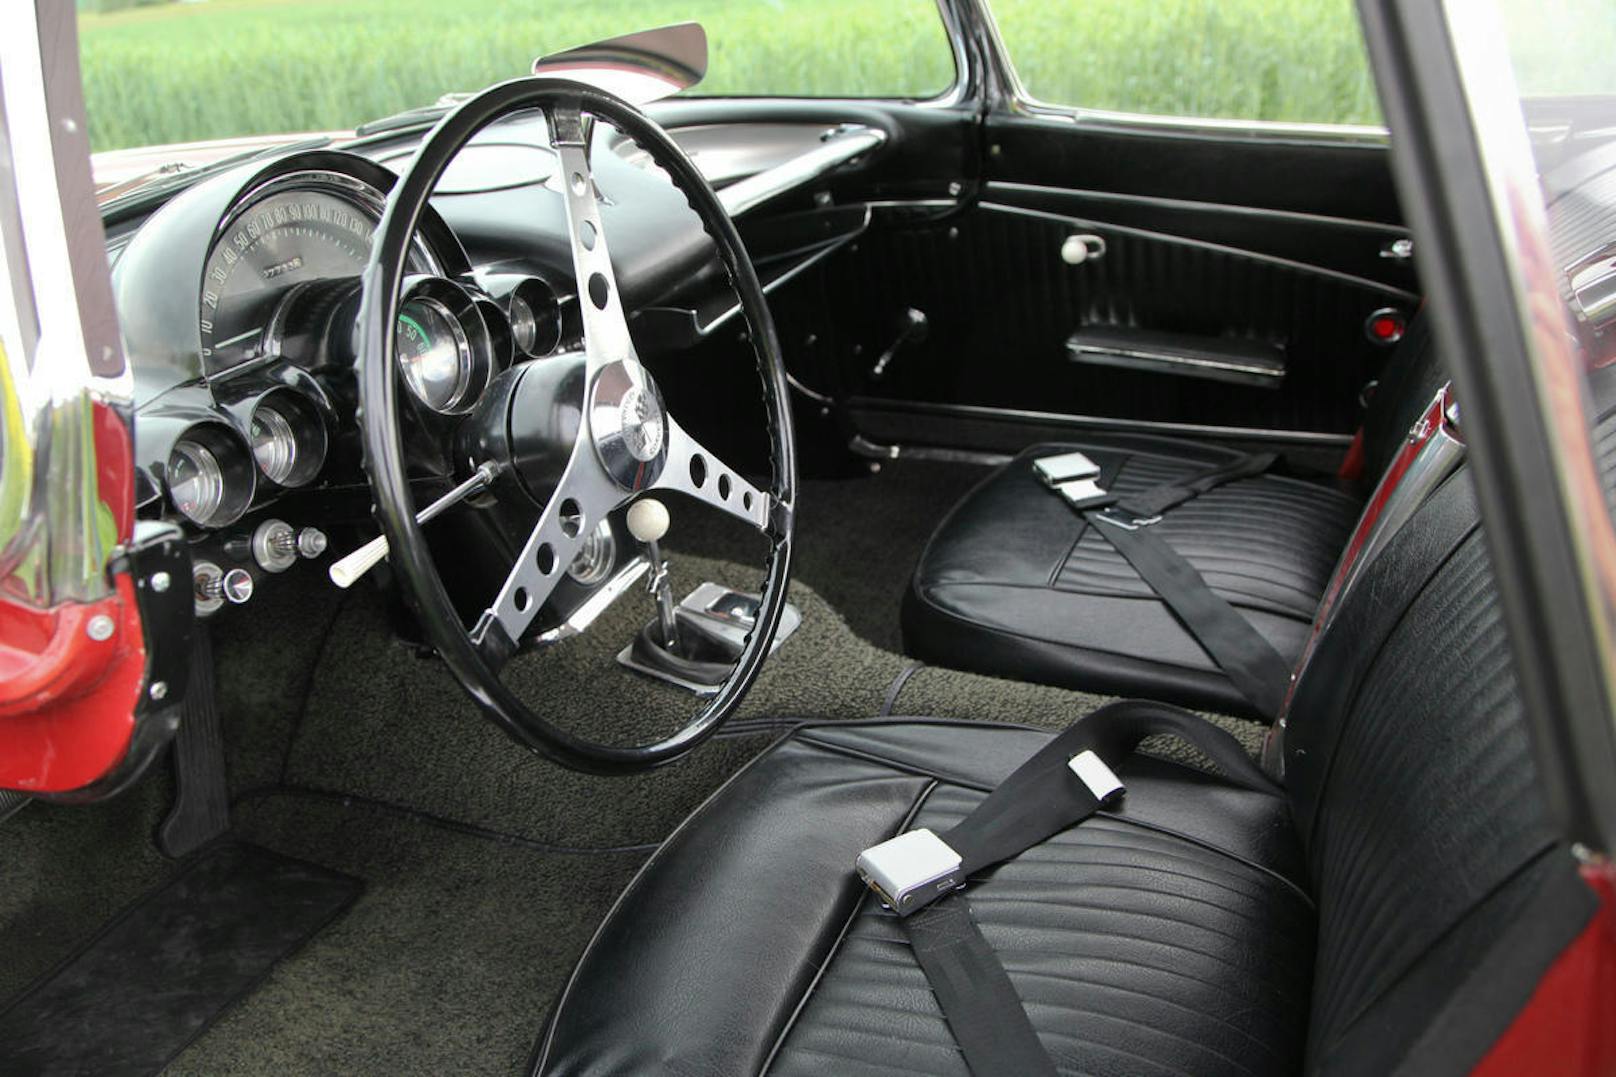 Grosses Lenkrad, serienmässige Beckengurte in der Corvette C1 von 1962.